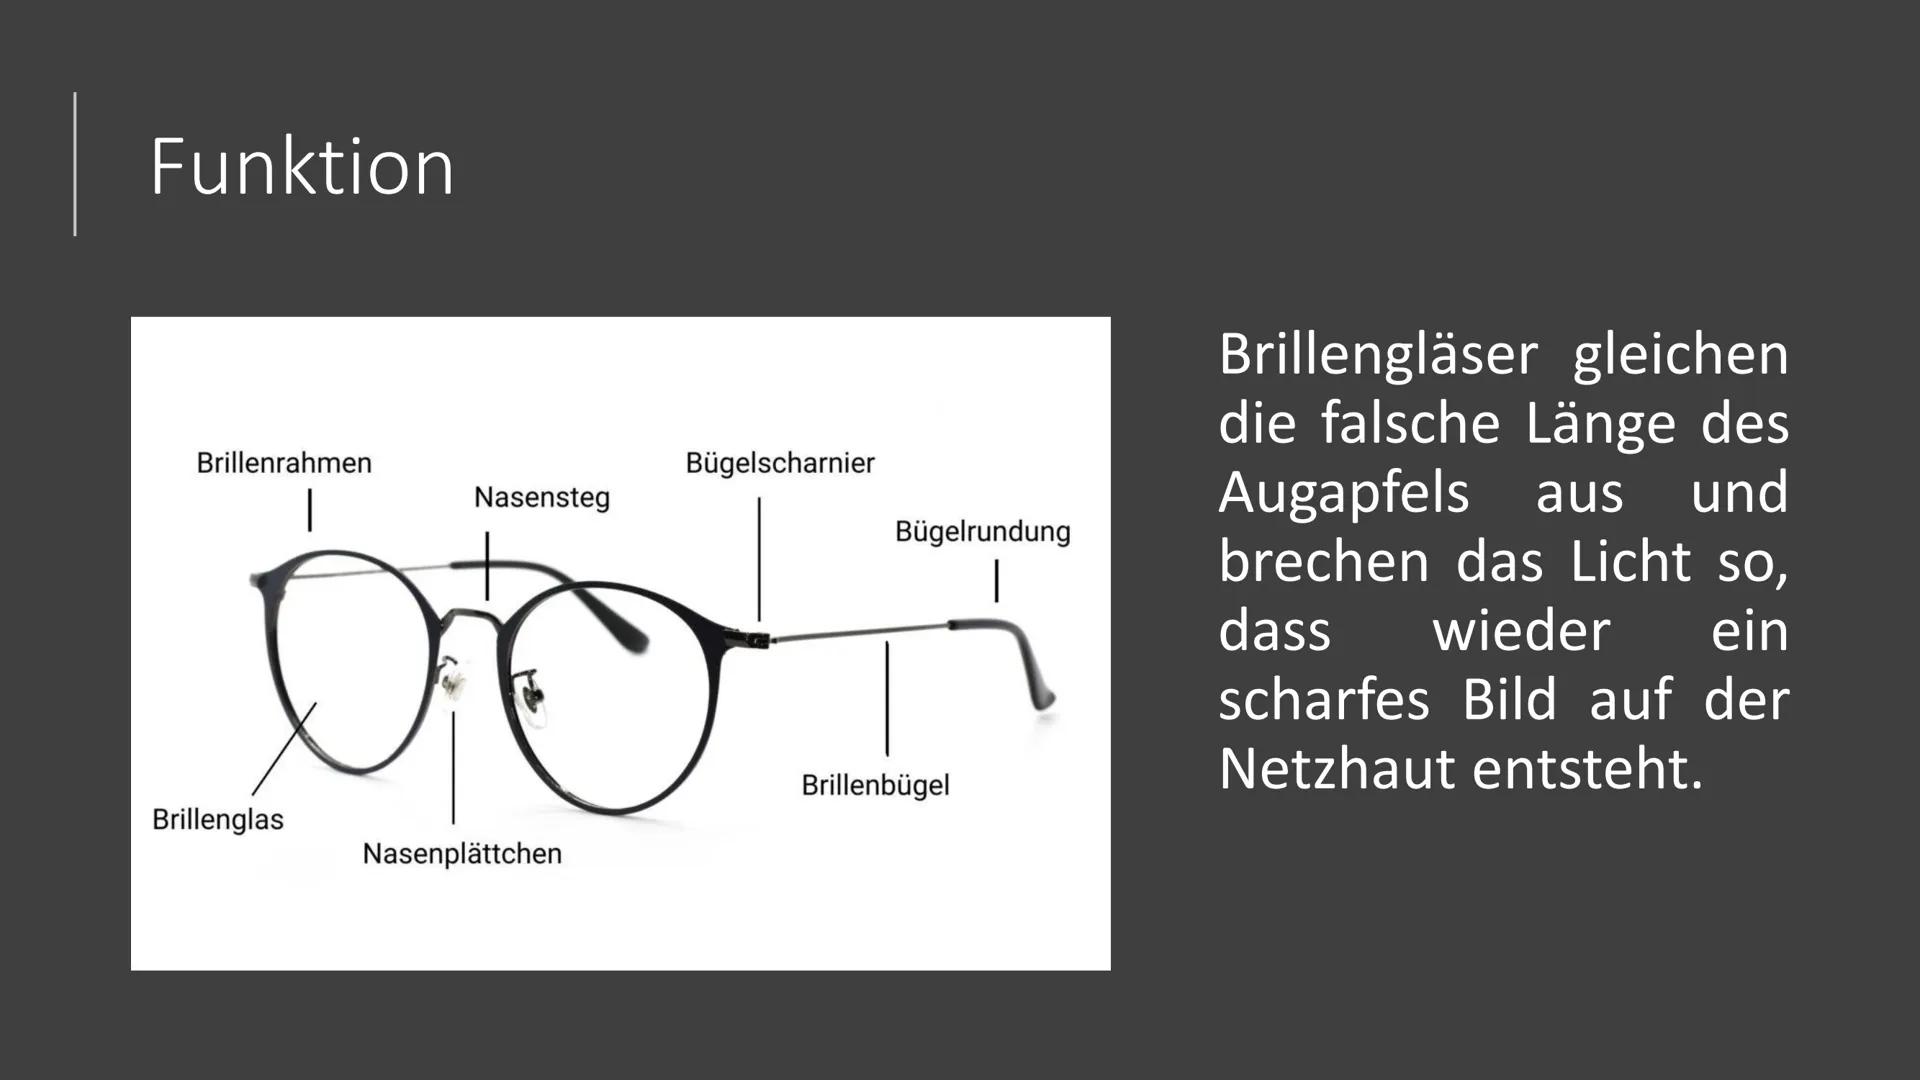 Präsentation
Die Brille
Zube Gliederung
1.
Geschichte
2. Arten von Brillen
3.
Fehlsichtigkeit
4.
5.
6. Quellen
Funktion der Brille
Dioptrien